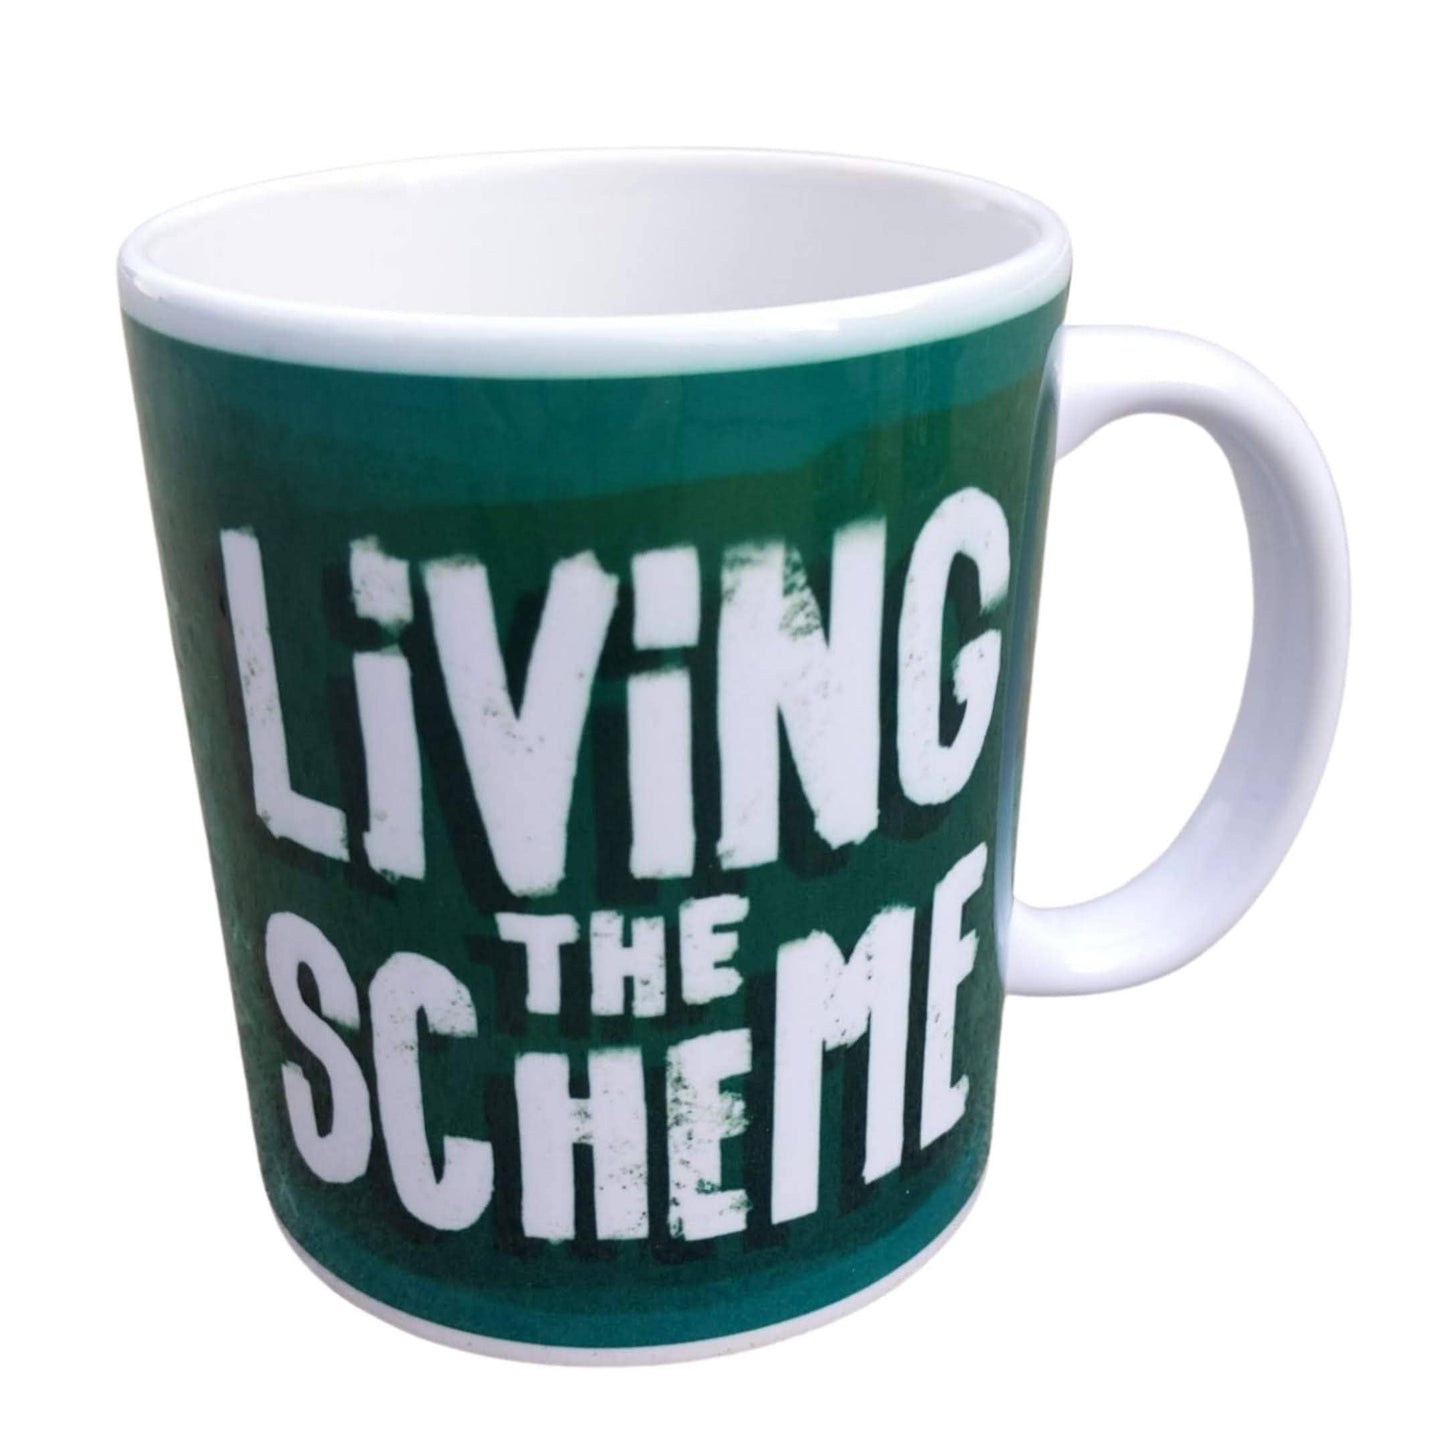 Living the Scheme 12oz Possum Coffee Mug